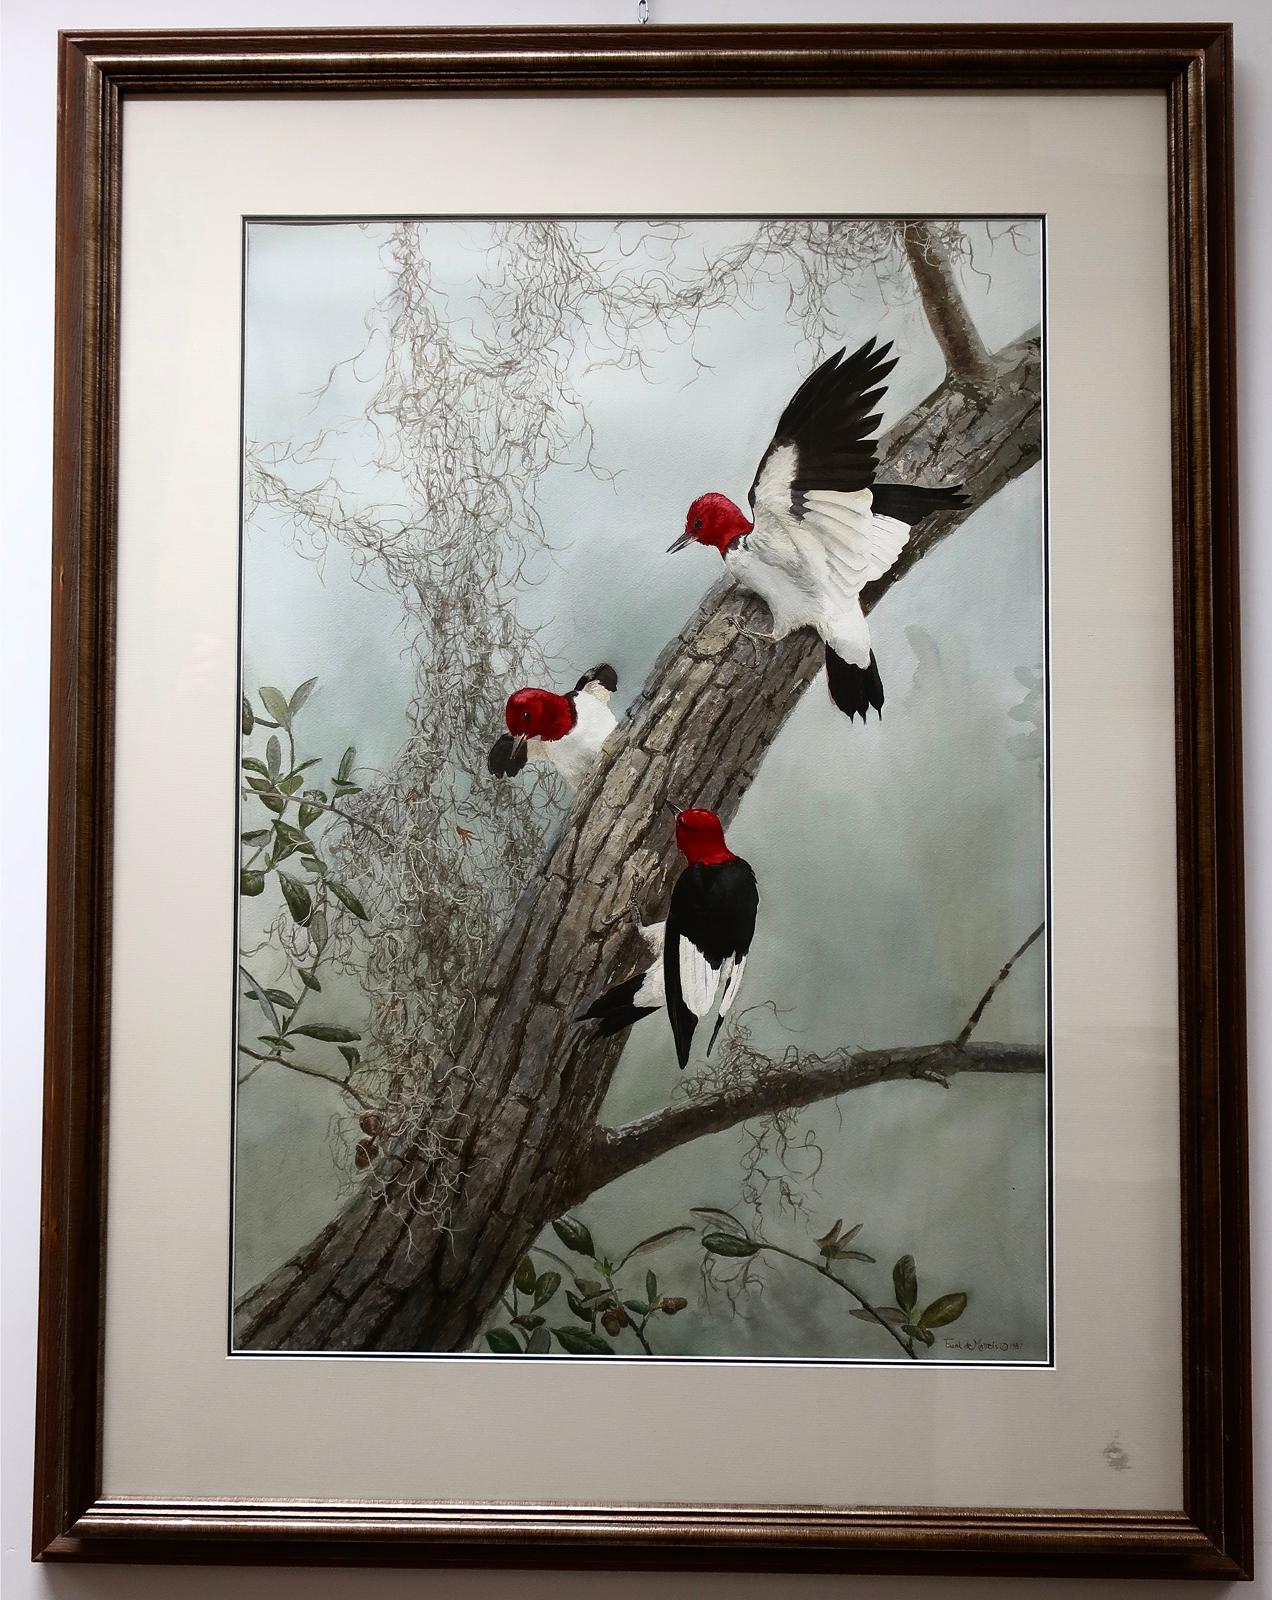 Frank Alberto de Matteis (1952) - Red Headed Woodpeckers